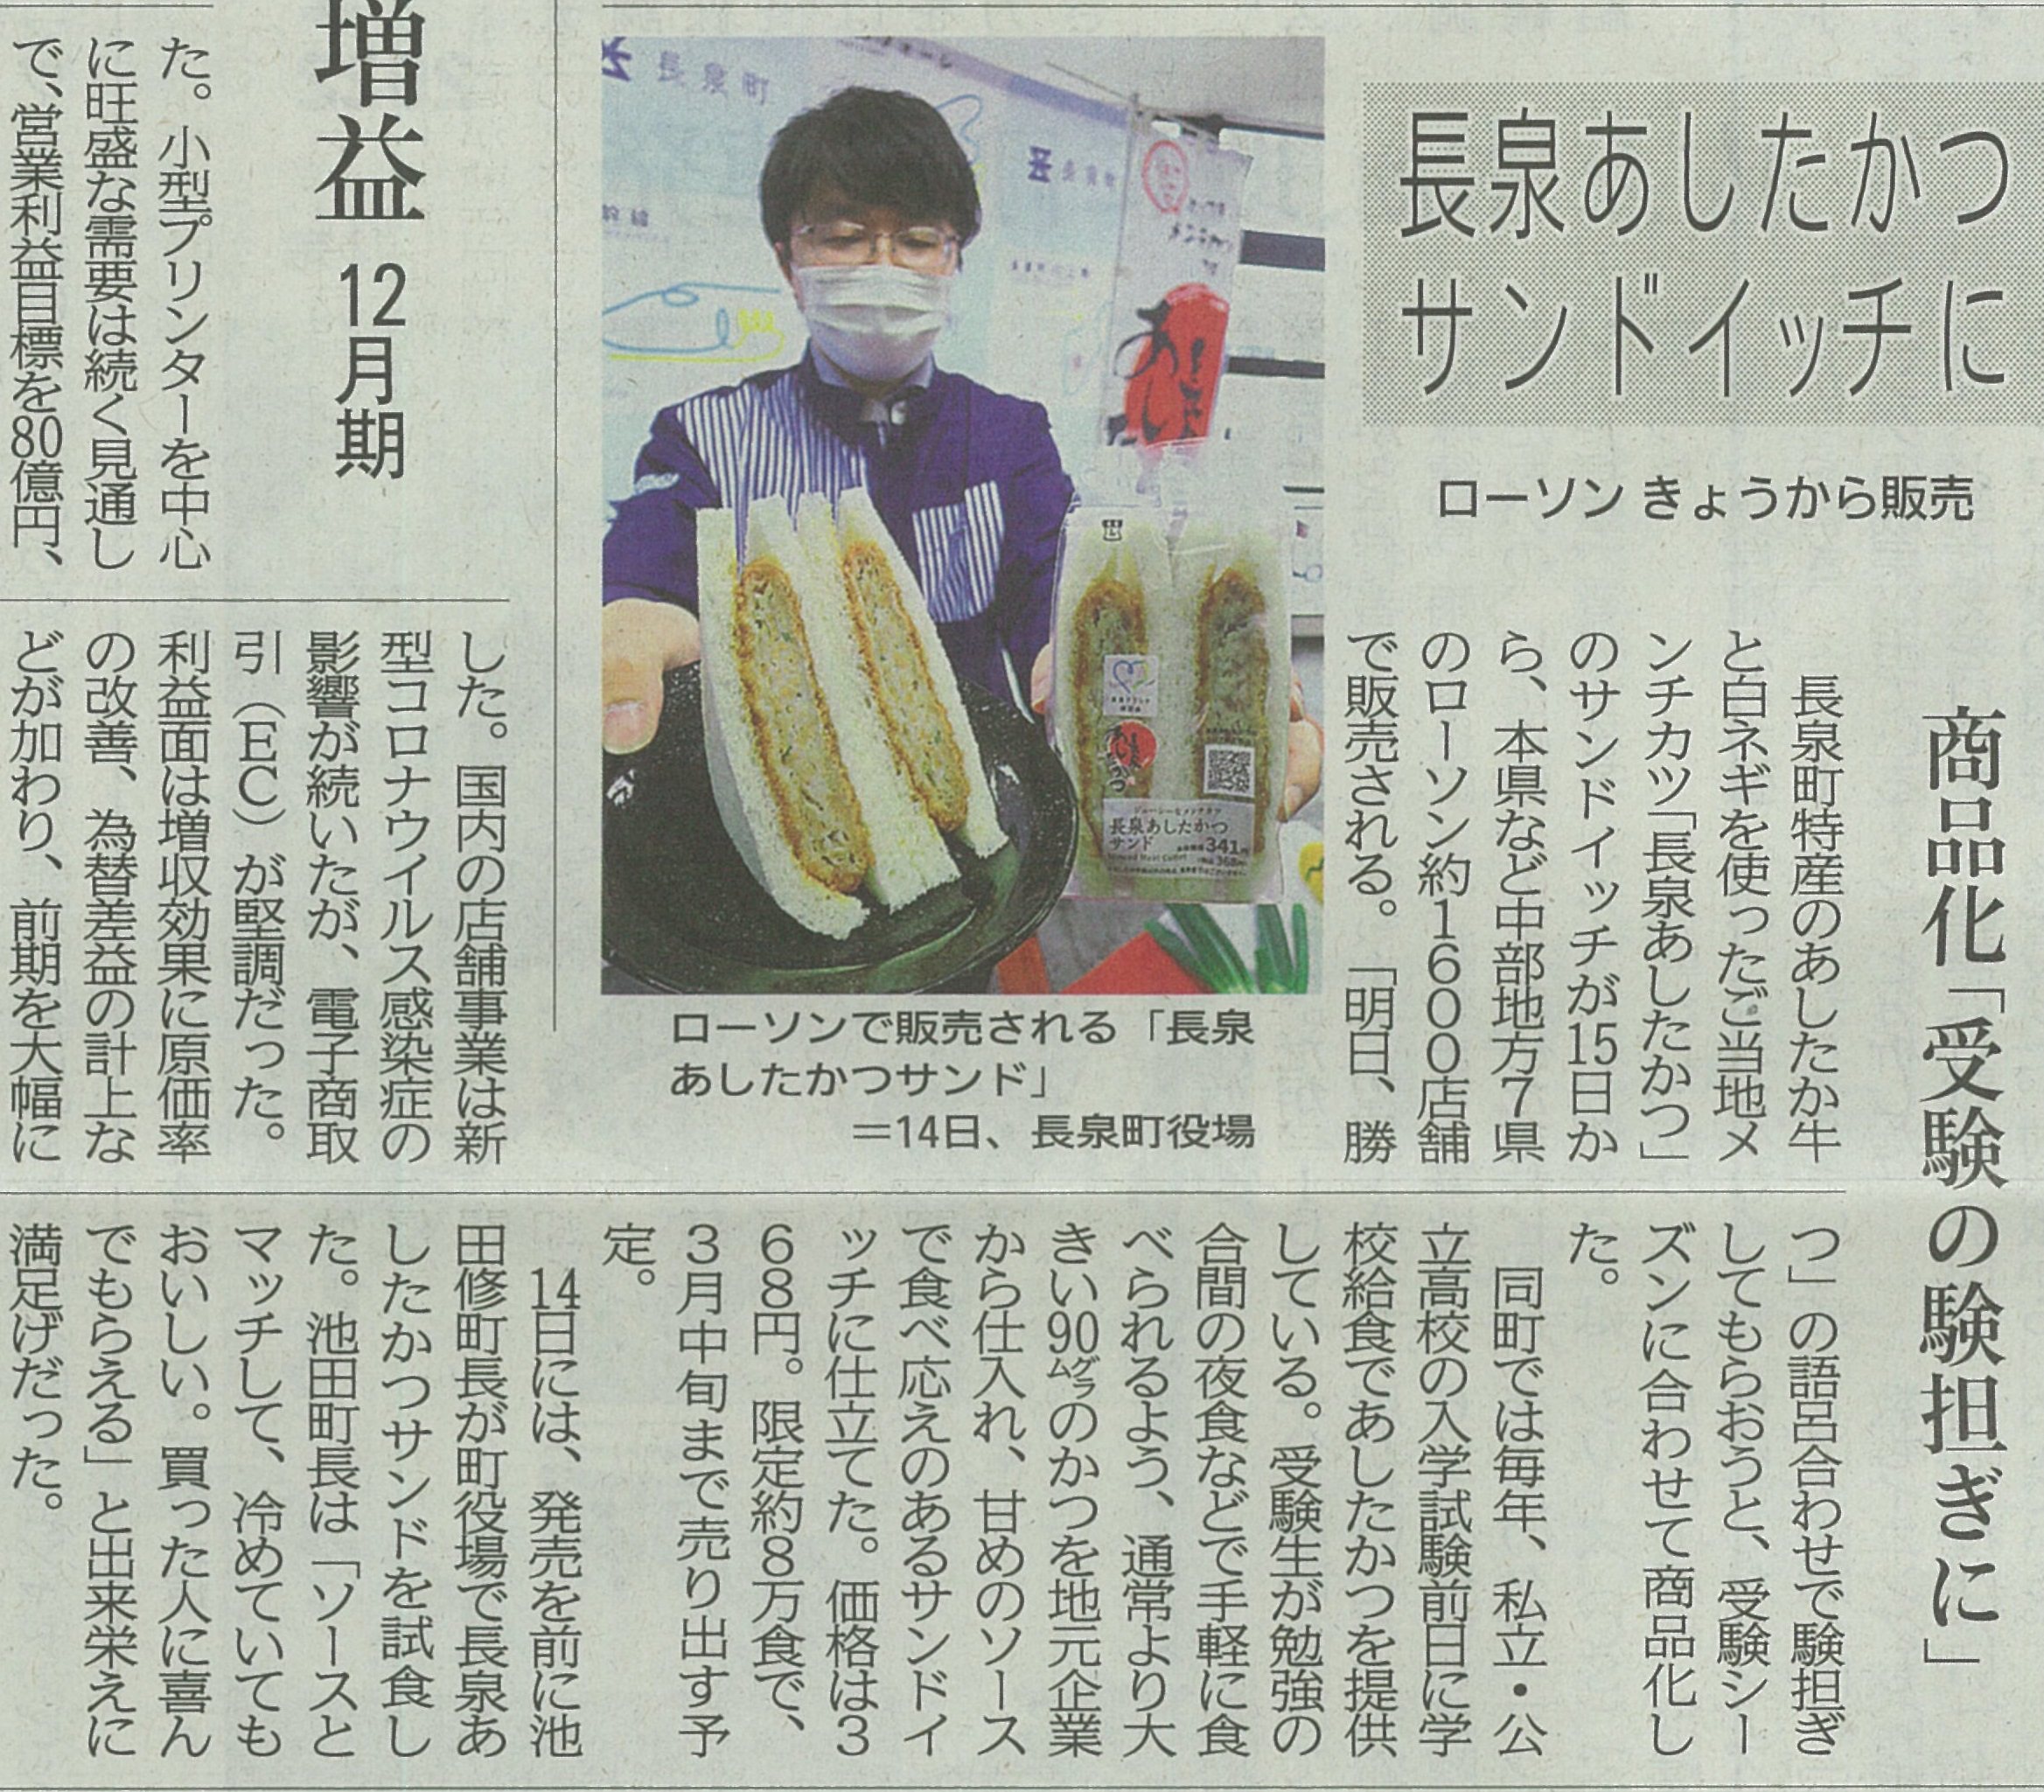 静岡新聞にローソン1600店舗で「長泉あしたかつサンド」が発売される記事が掲載されました